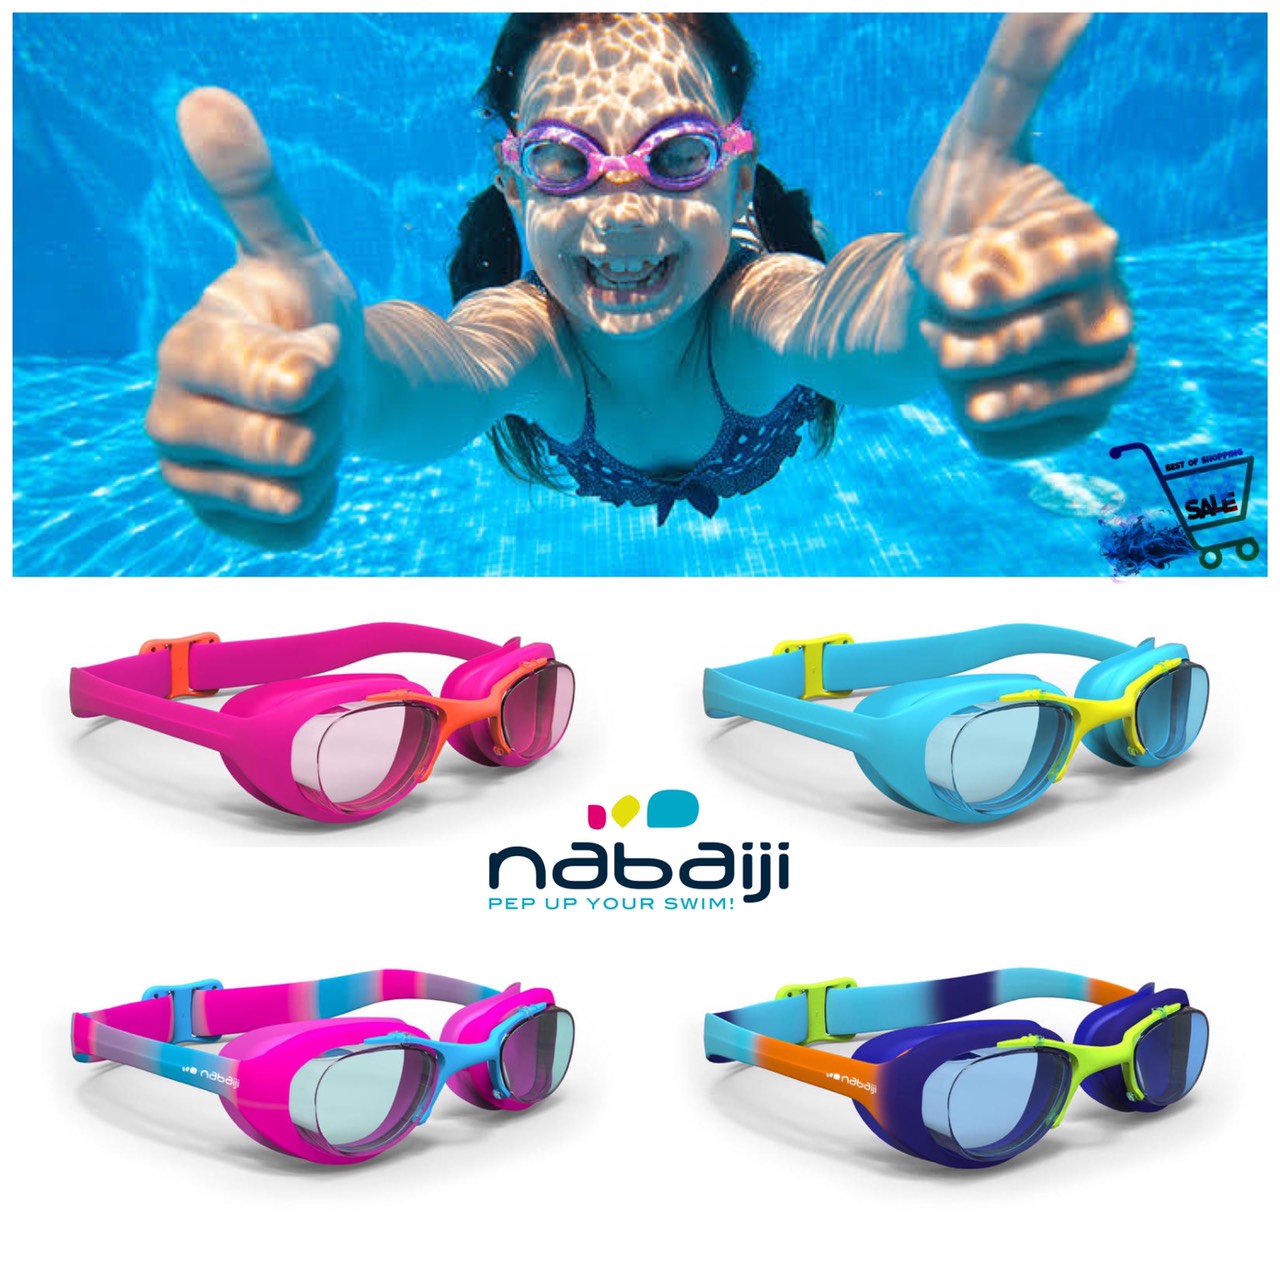 ภาพที่ให้รายละเอียดเกี่ยวกับ แว่นตาว่ายน้ำสำหรับเด็ก แว่นว่ายน้ำเด็ก แว่นตาว่ายน้ำ รุ่น 100 XBASE NABAIJI แท้ ปรับเลนส์ได้ SWIMMING GOGGLES SIZE S